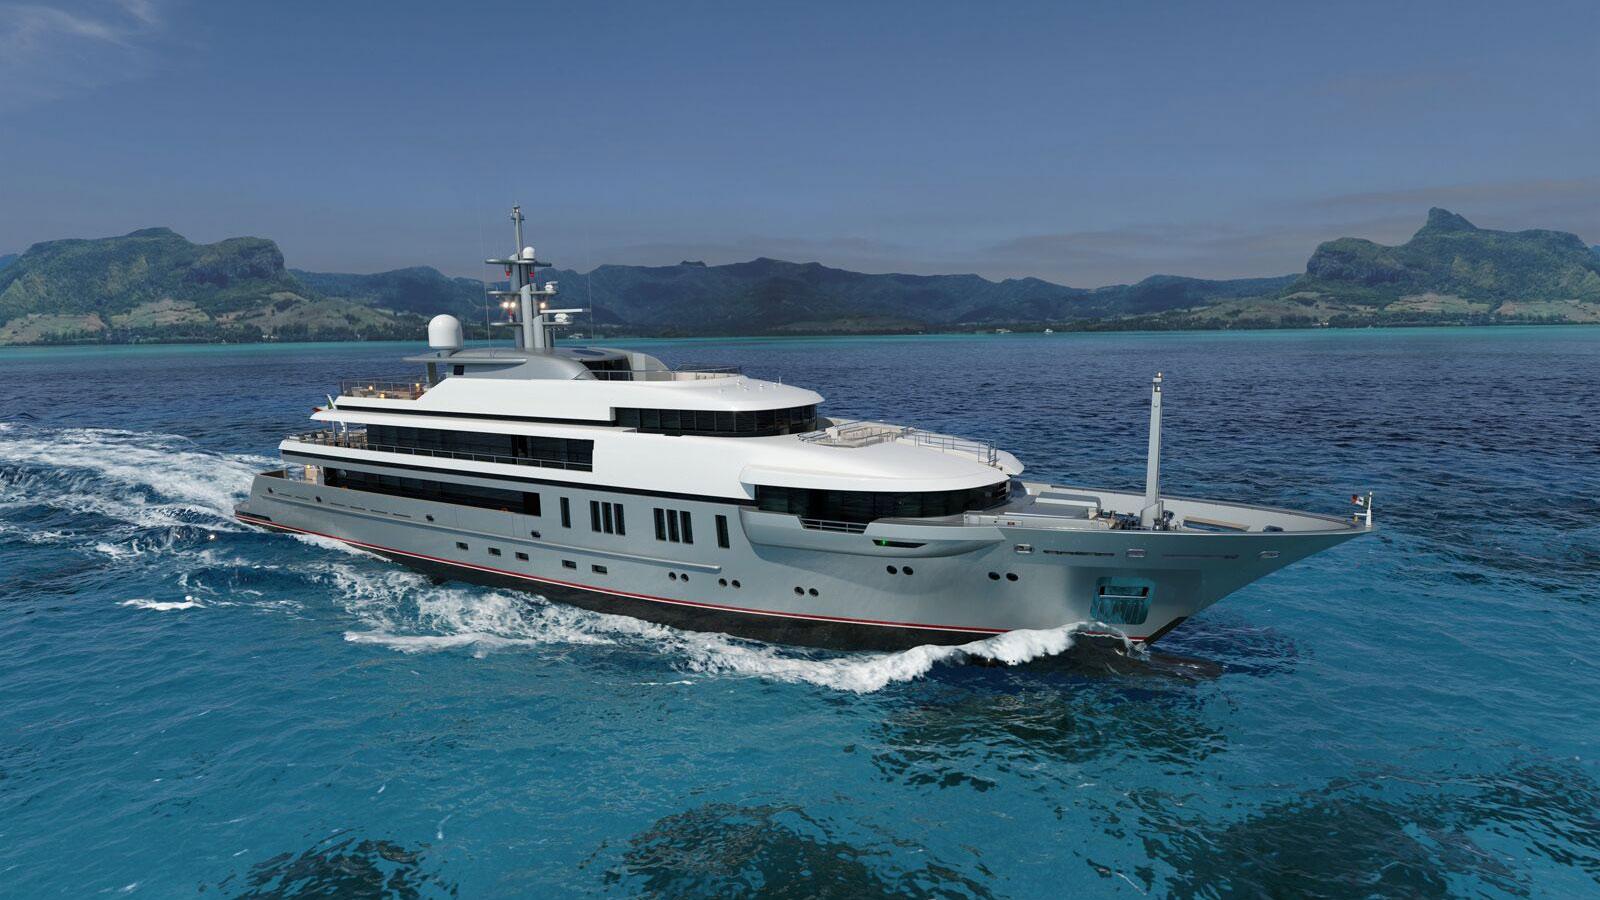 ATOMIC Yacht • VSY • 2020 • Owner Dan Huish